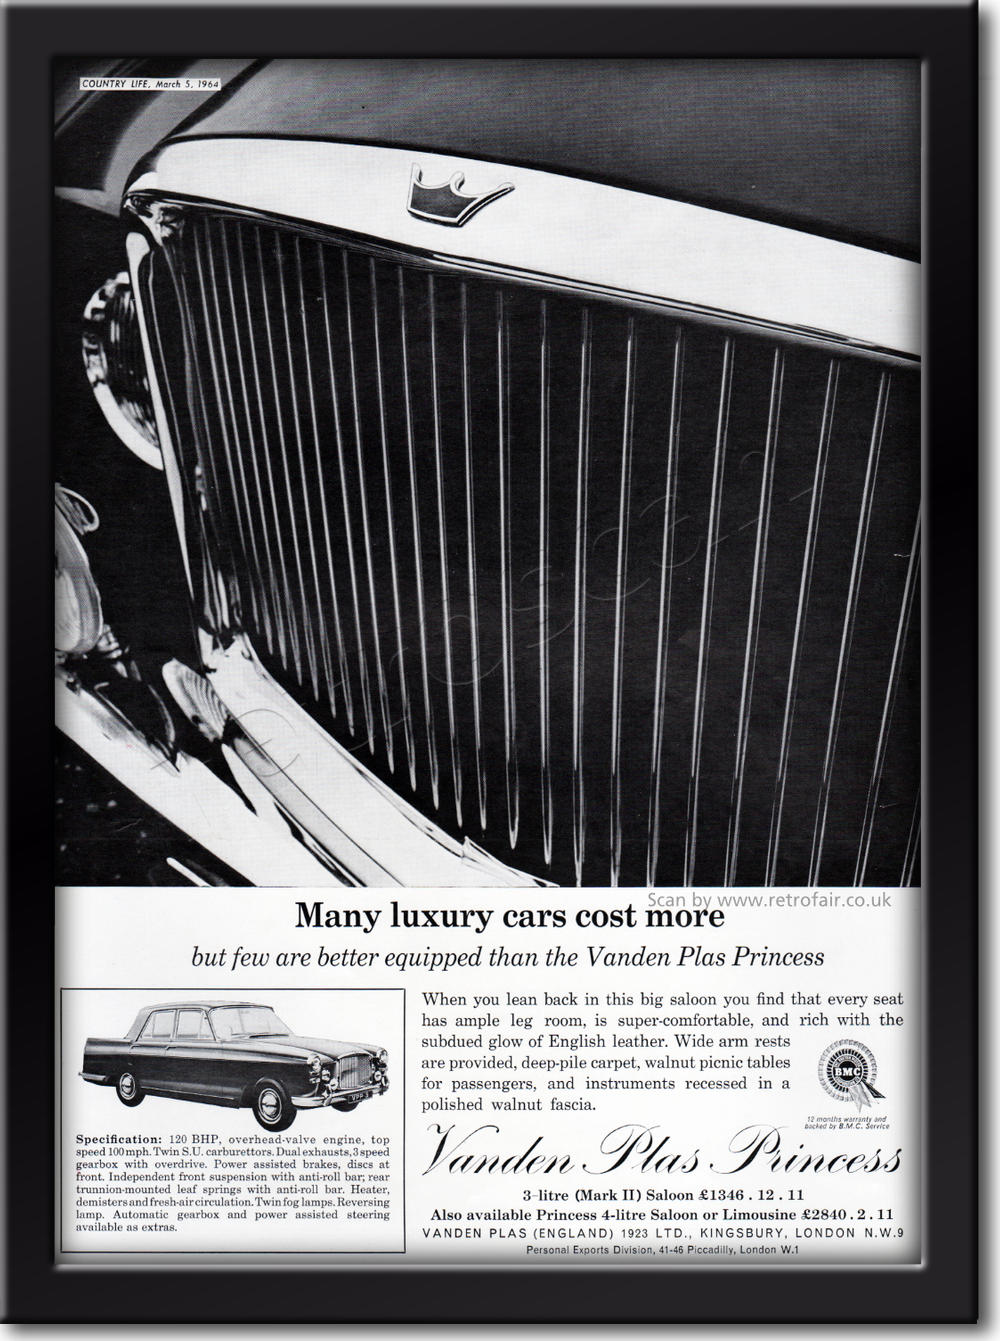 1964 vintage Vanden Plas Princess advert